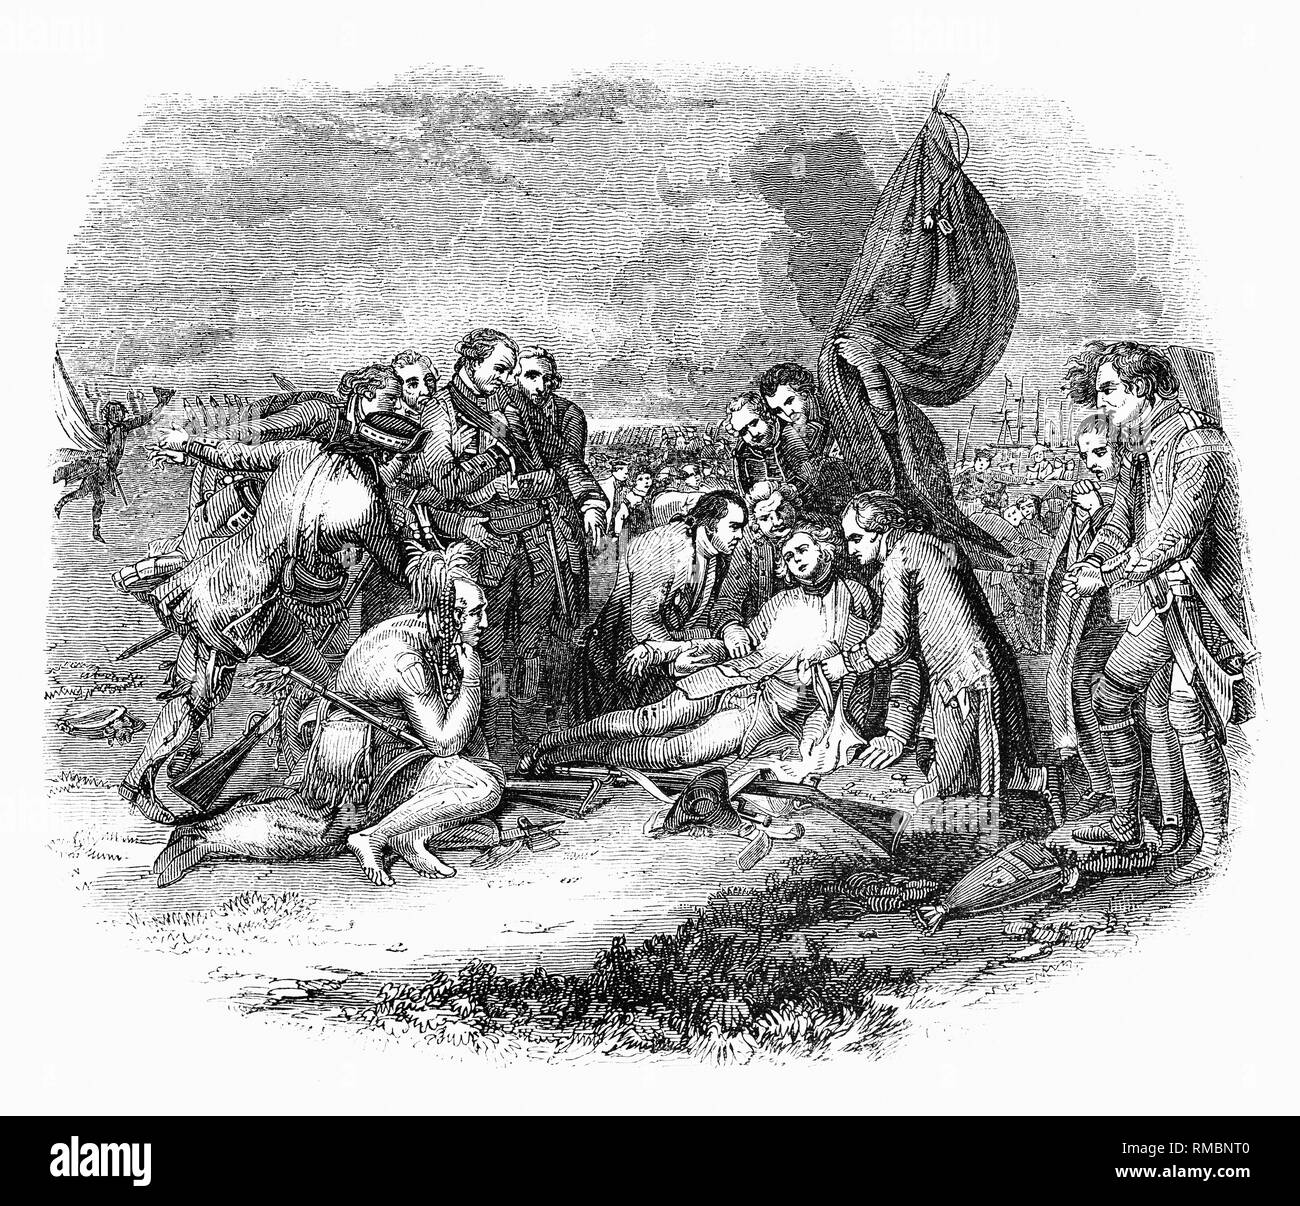 Eine Zeichnung von der Tod von General Wolfe, einem bekannten Malerei 1770 von anglo-amerikanischen Künstlers Benjamin West, der Tod des britischen General James Wolfe 1759 an der Schlacht von Quebec während des Franzosen- und Indianerkrieg. Die Schlacht von Quebec, der auch als die Schlacht der Ebenen von Abraham, am 13. September bekannt, 1759 ein zentrales Ereignis wurde im Siebenjährigen Krieg und beschlossen, das Schicksal der Französischen Kolonien in Nordamerika. Der Streit zwischen der britischen Armee und der französischen Armee kämpfte; die warf Kampf dauerte nur 15 Minuten. Die britische Armee wurde von General Wolfe geboten. Obwohl su Stockfoto